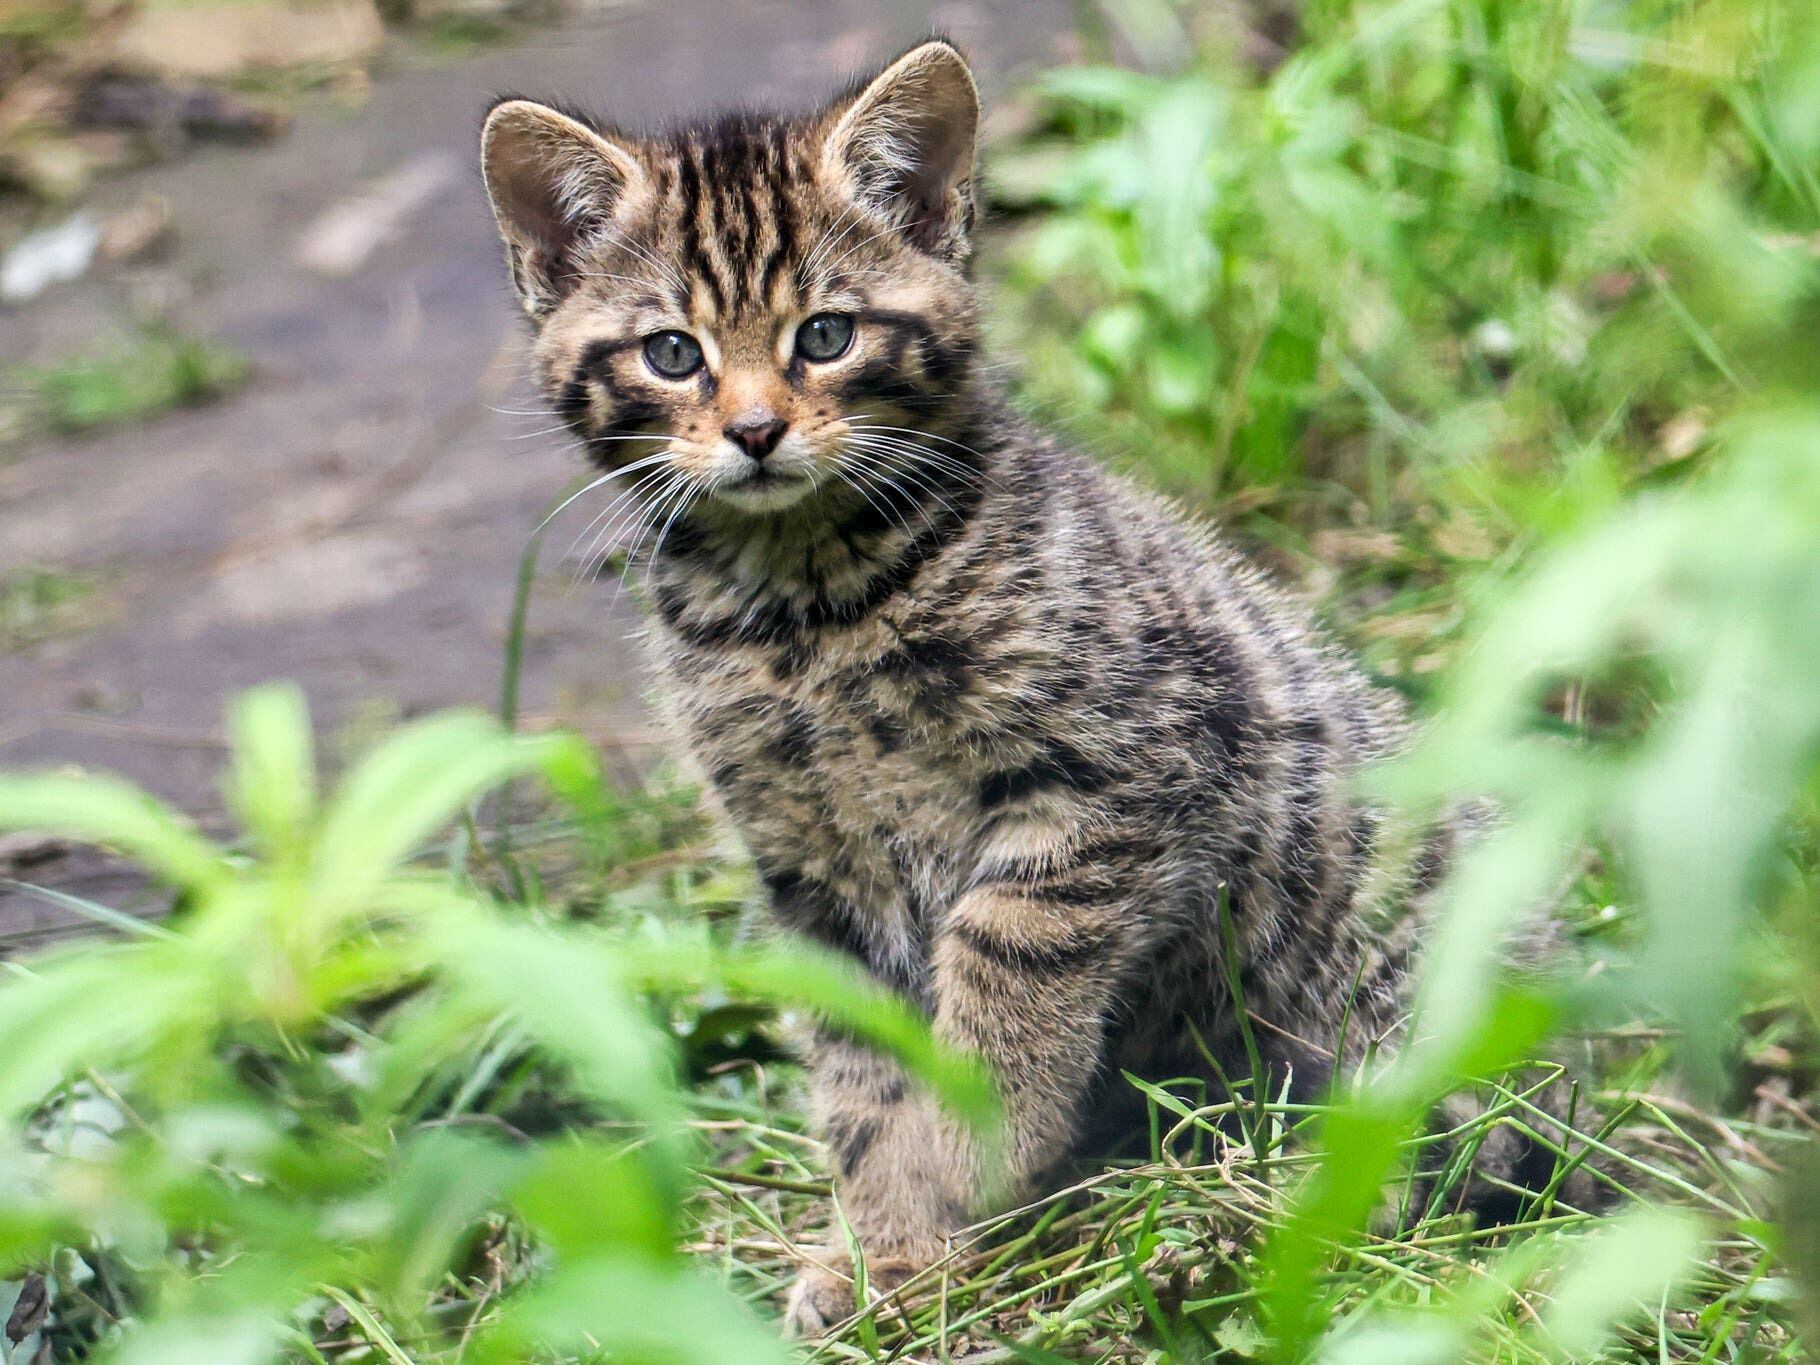 Birth of wildcat kittens in Kent wildlife park sparks hope for rarest UK mammal